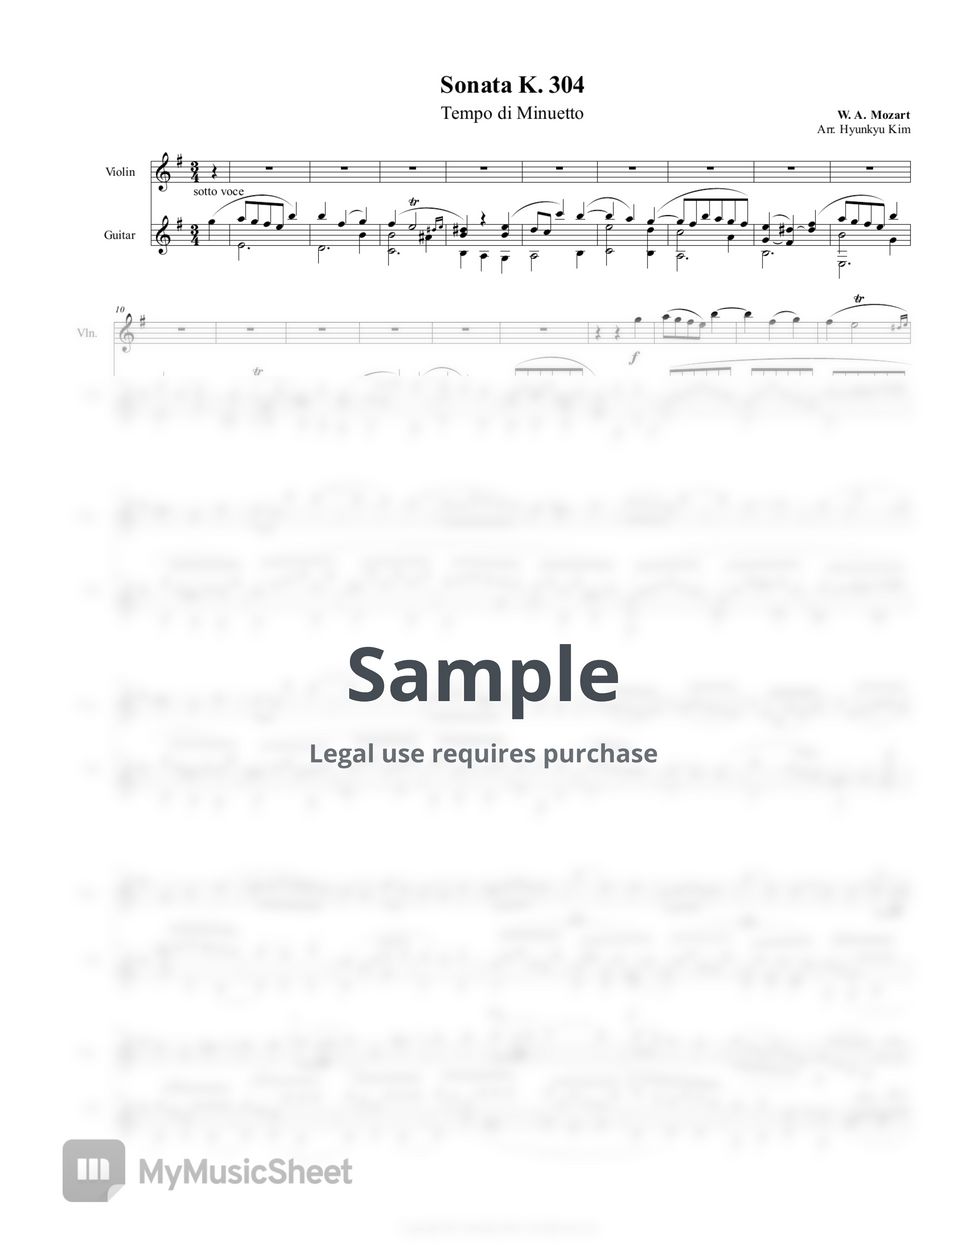 W. A. Mozart - Violin Sonata in E minor No. 21 K. 304 - 2. Tempo di Minuetto (Violin & Guitar) by Hyunkyu Kim (김현규)